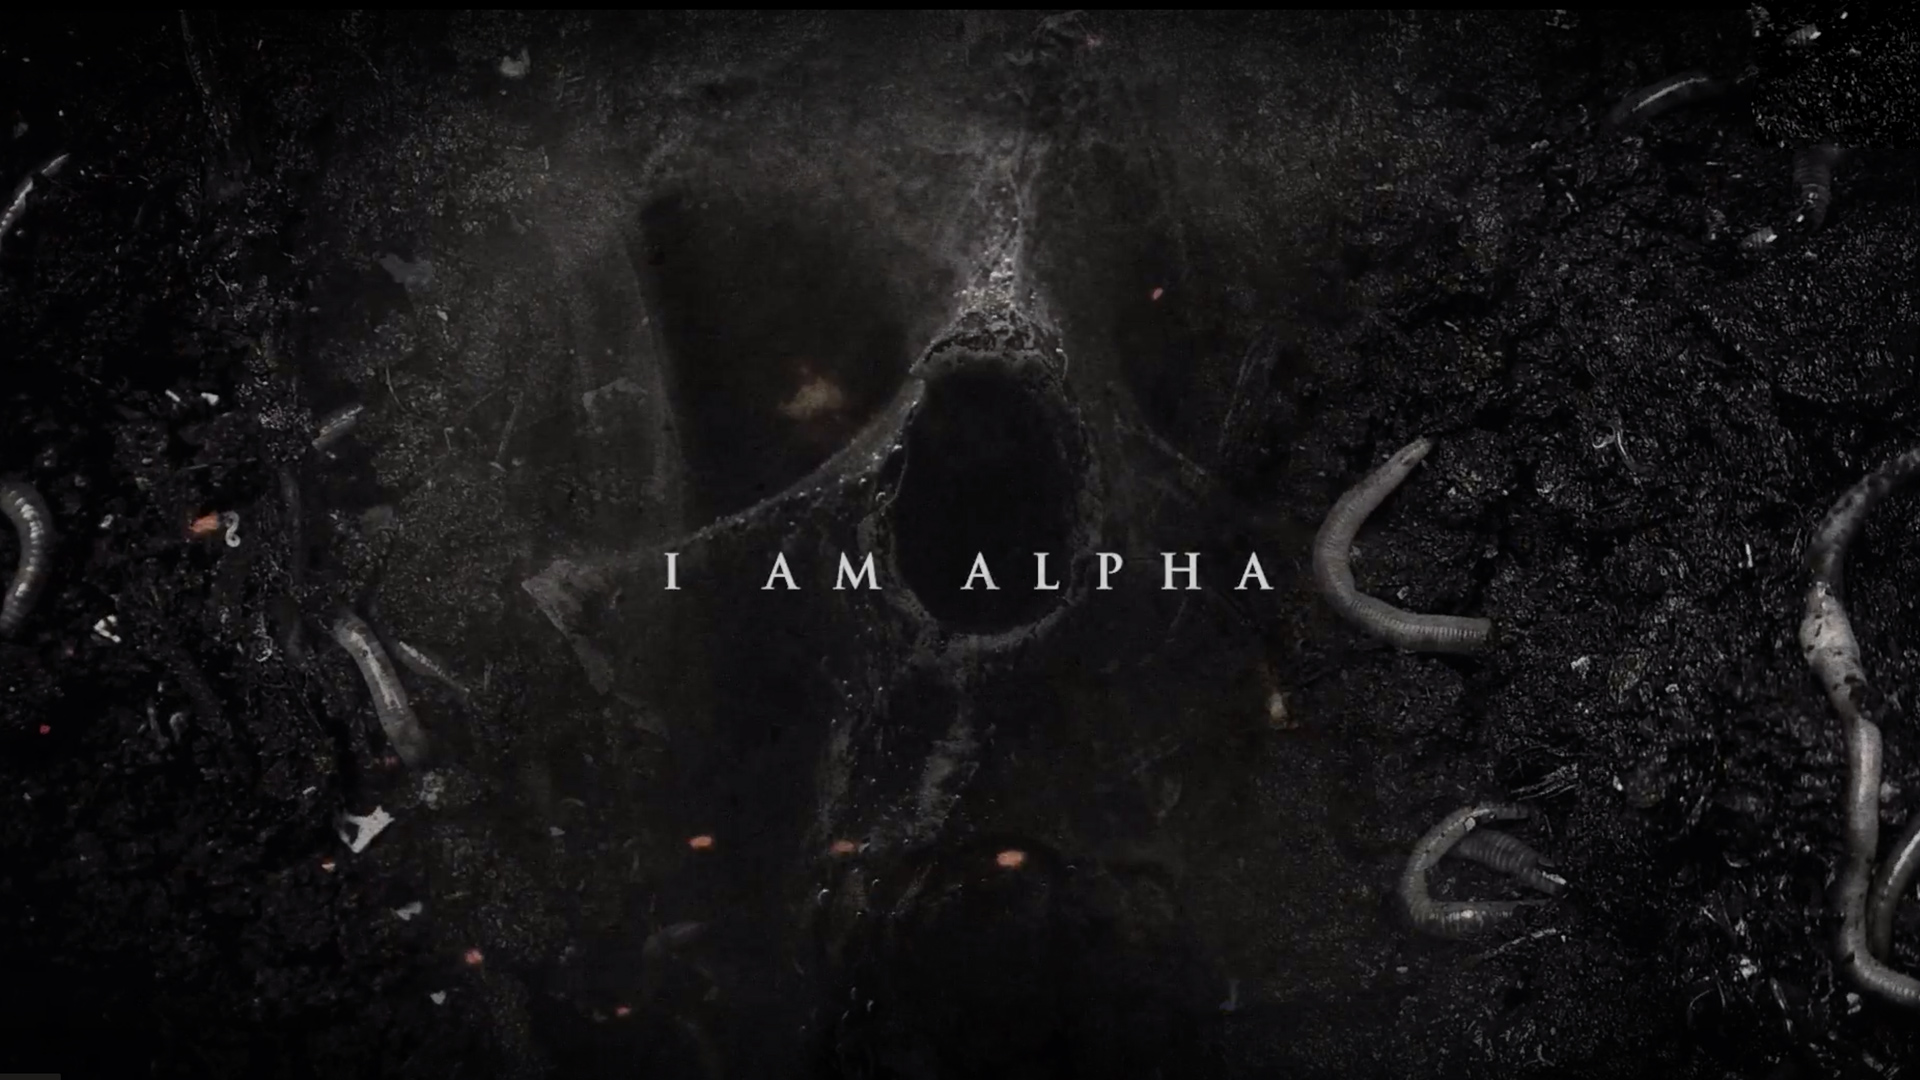 I am alpha